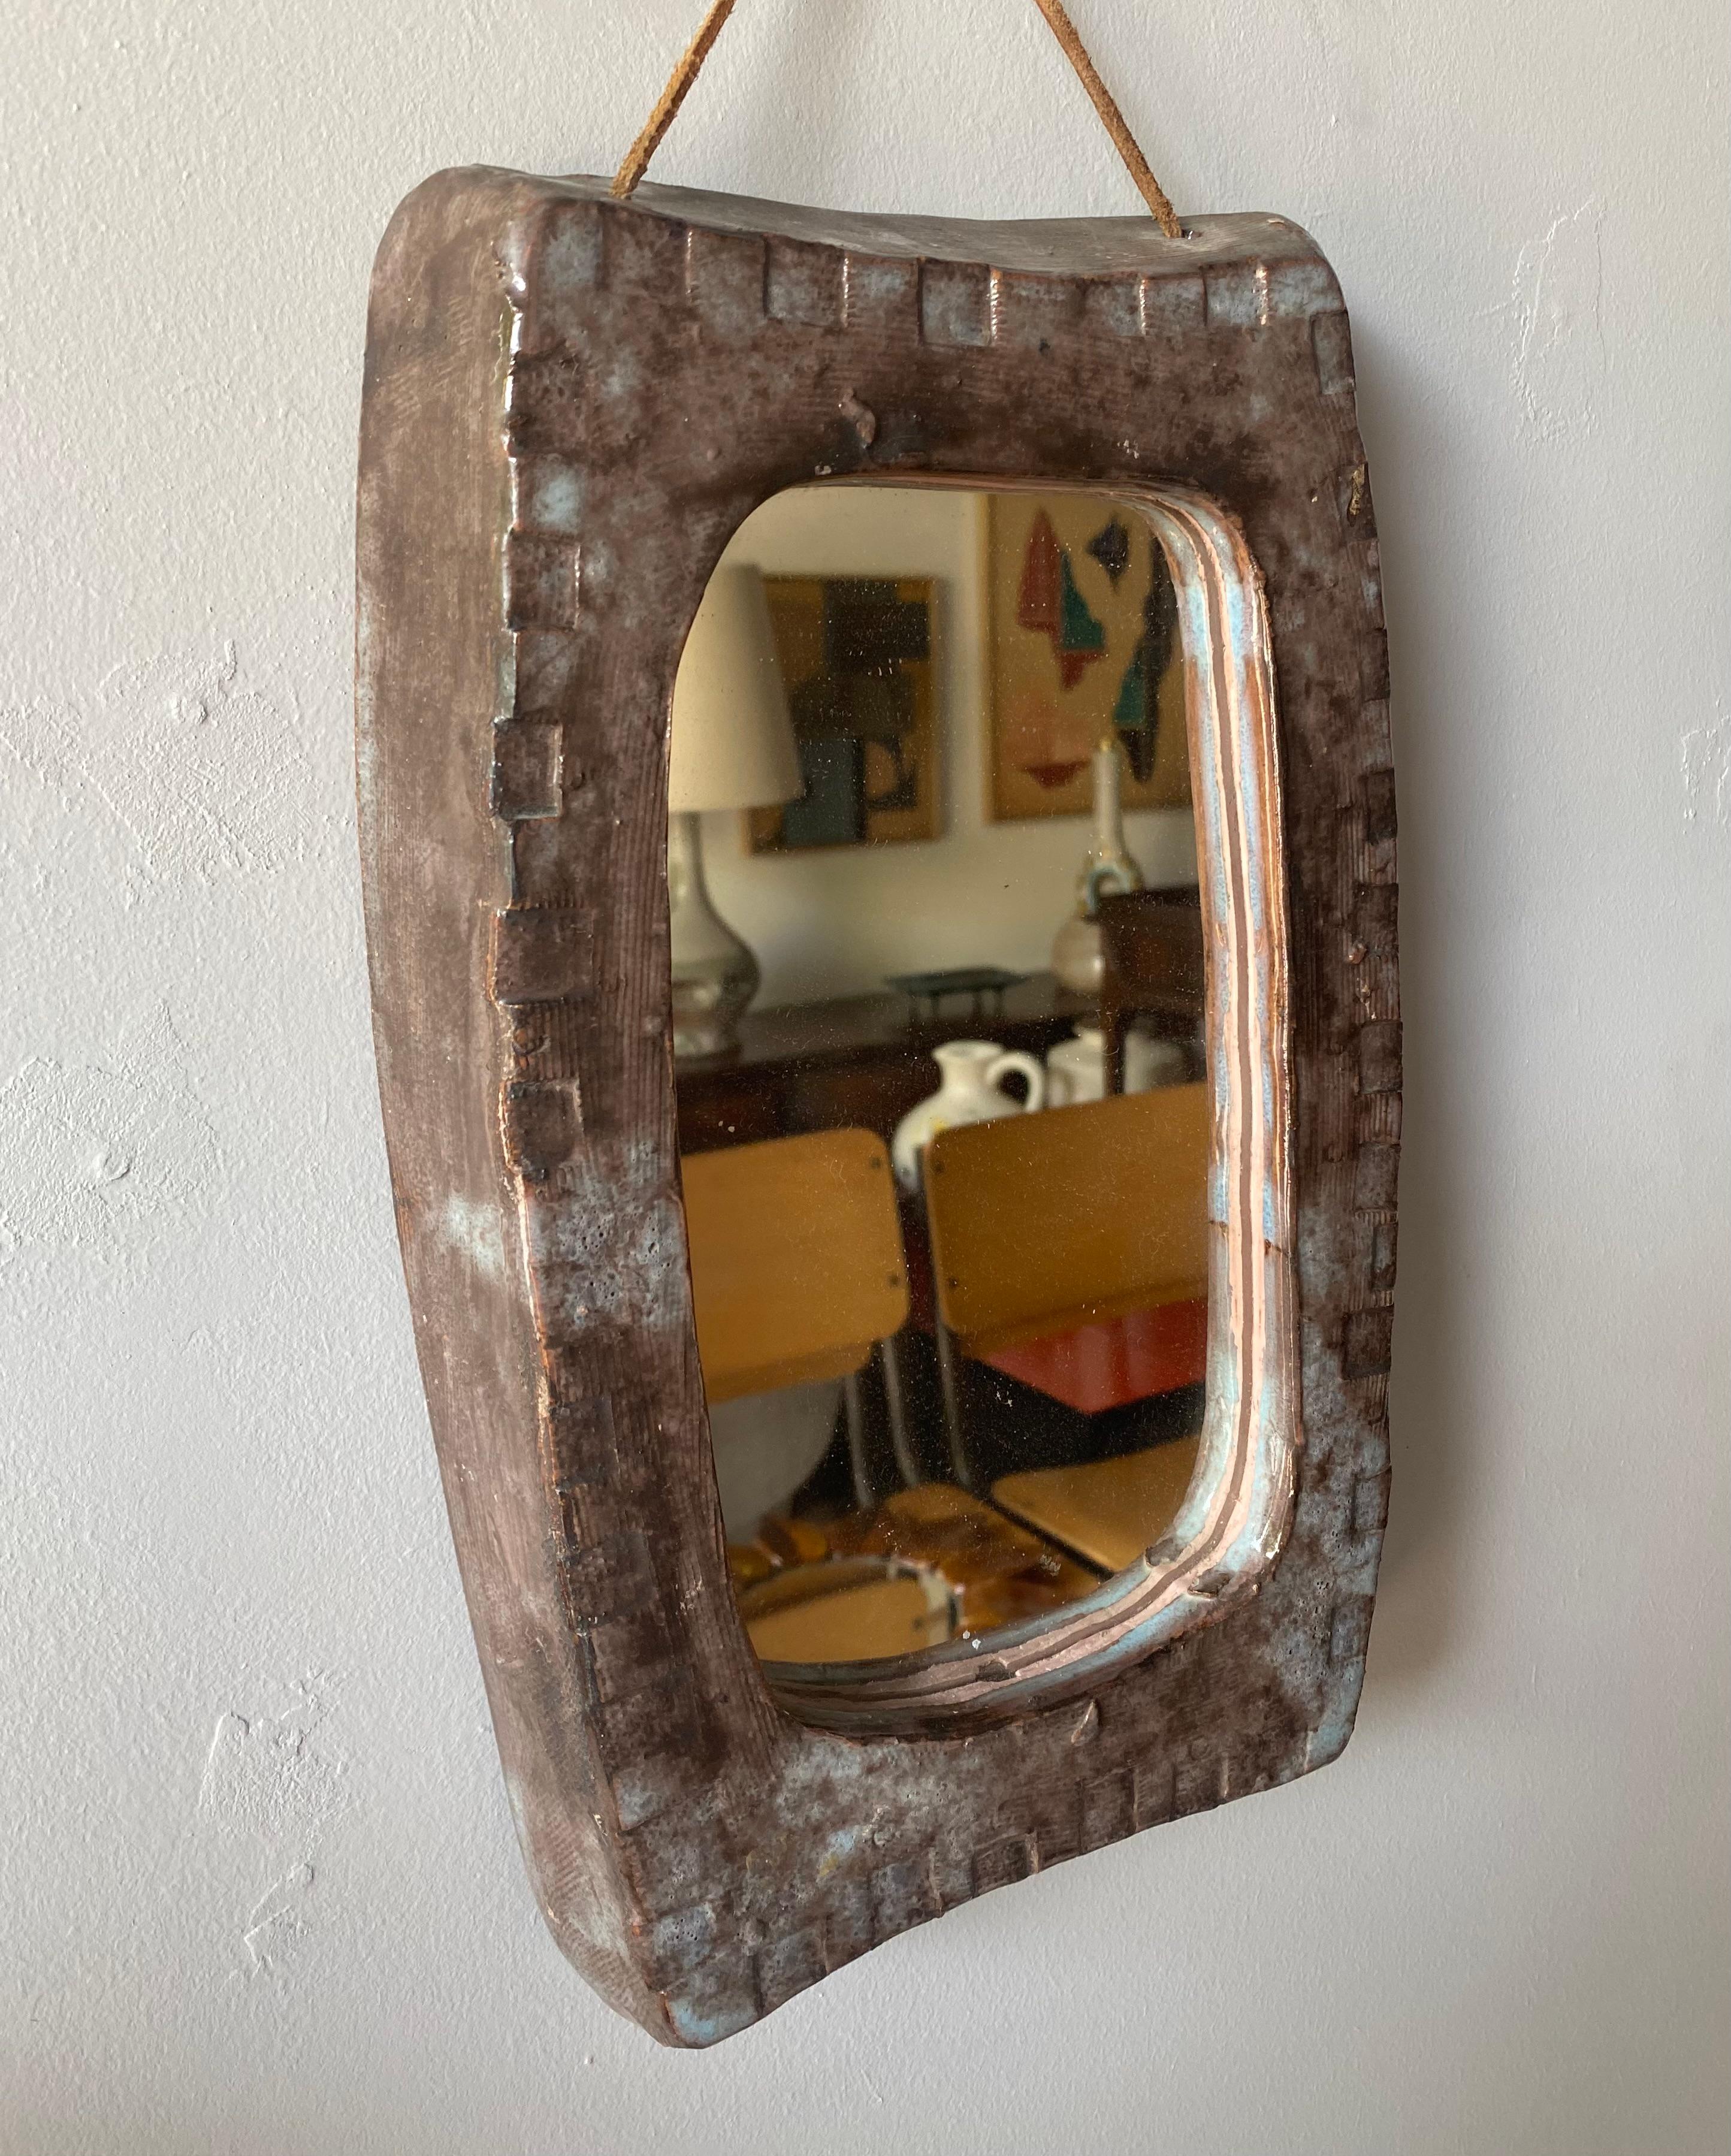 Ceramic Mirror, France, 1960s
In the taste of Juliette Derel